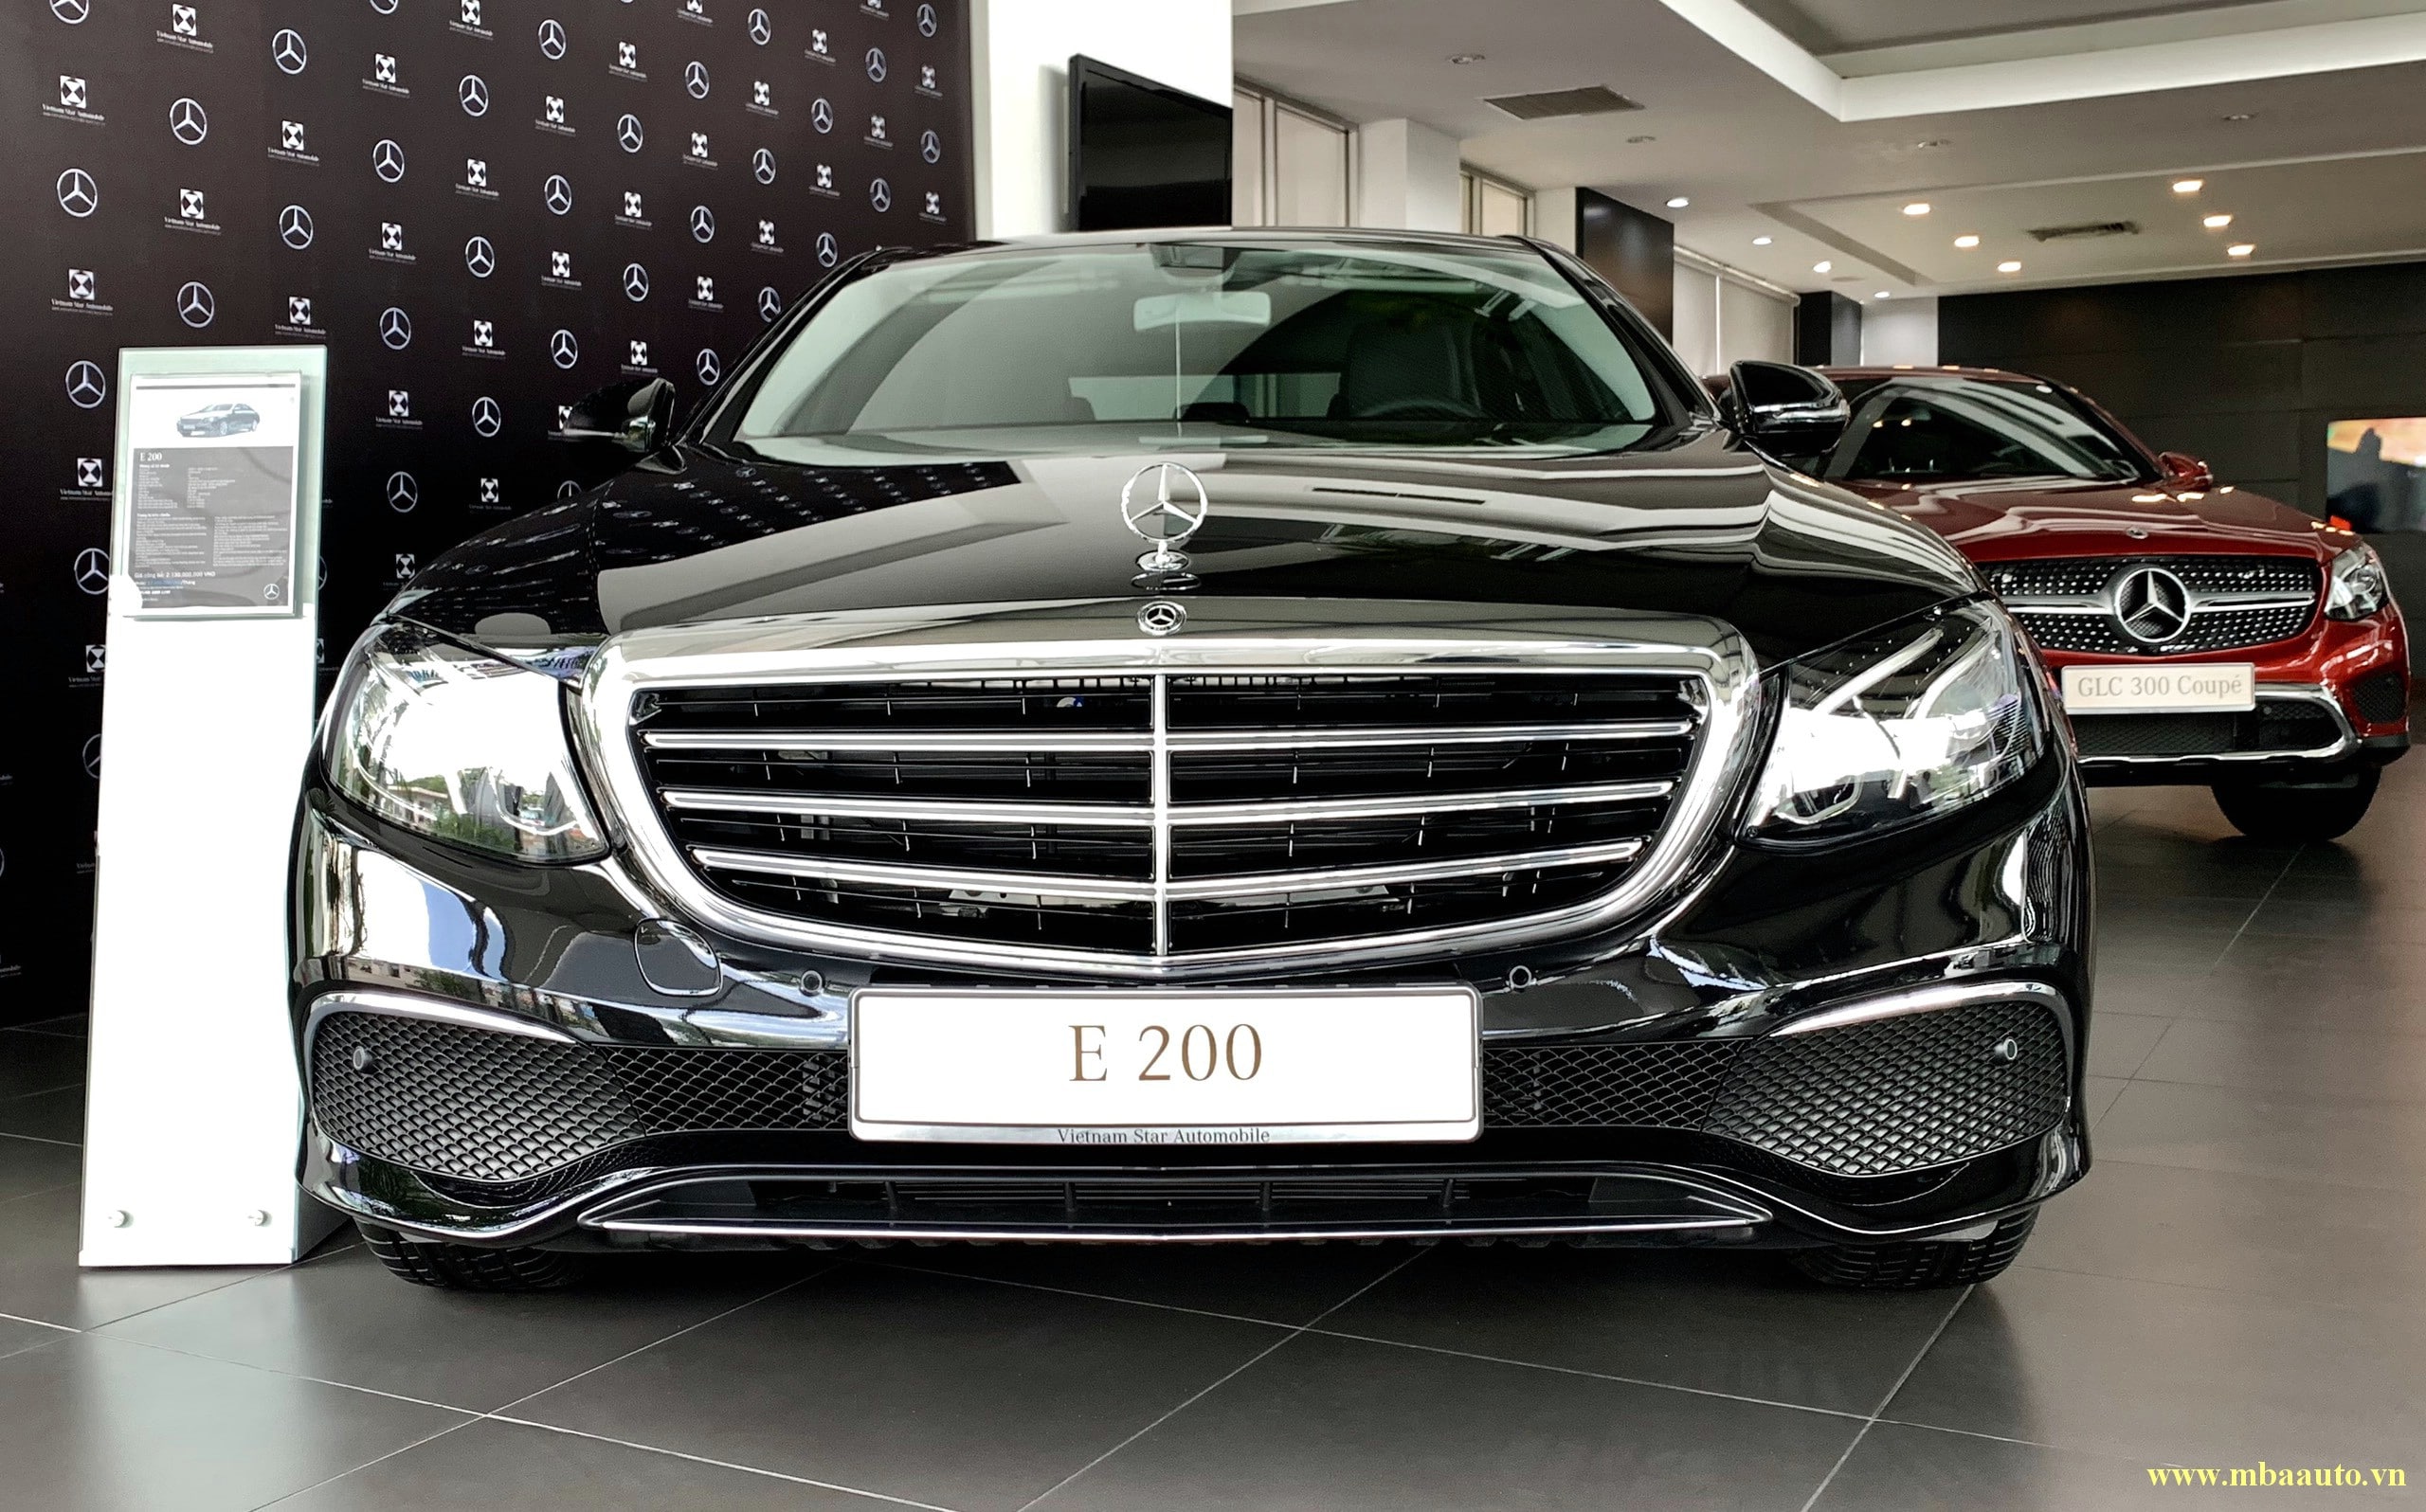 Đánh giá xe Mercedes-Benz E200 2020 sang trọng giá ưu đãi hấp dẫn - MBA ...